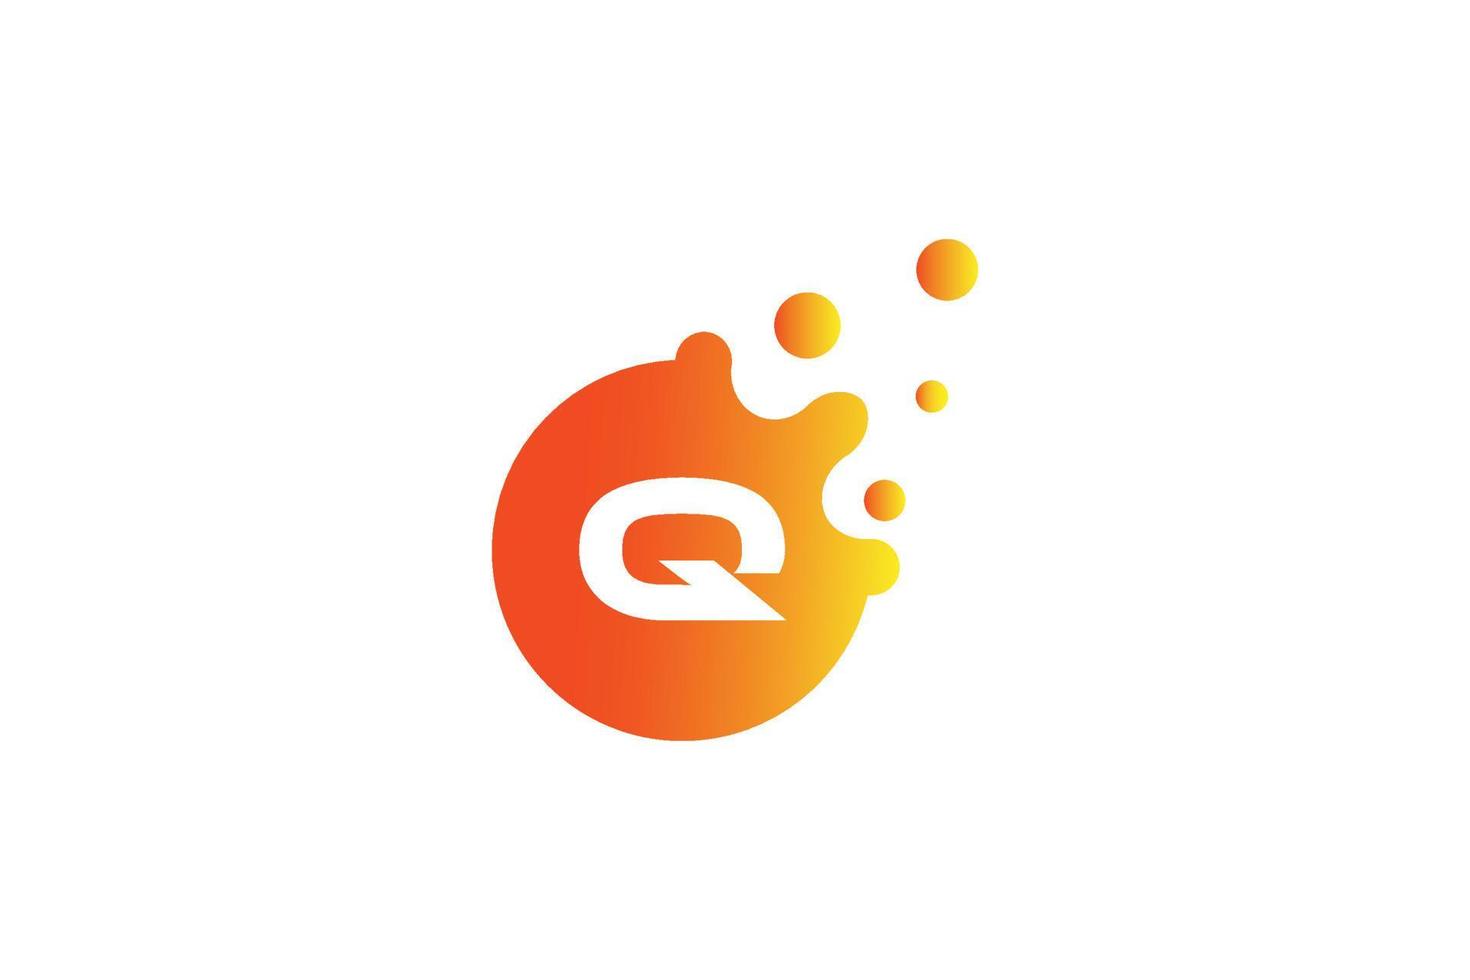 Buchstabe q-Logo. q Briefdesignvektor mit Punktvektorillustration. buchstabenmarkenlogo mit orange und gelbem verlauf. vektor